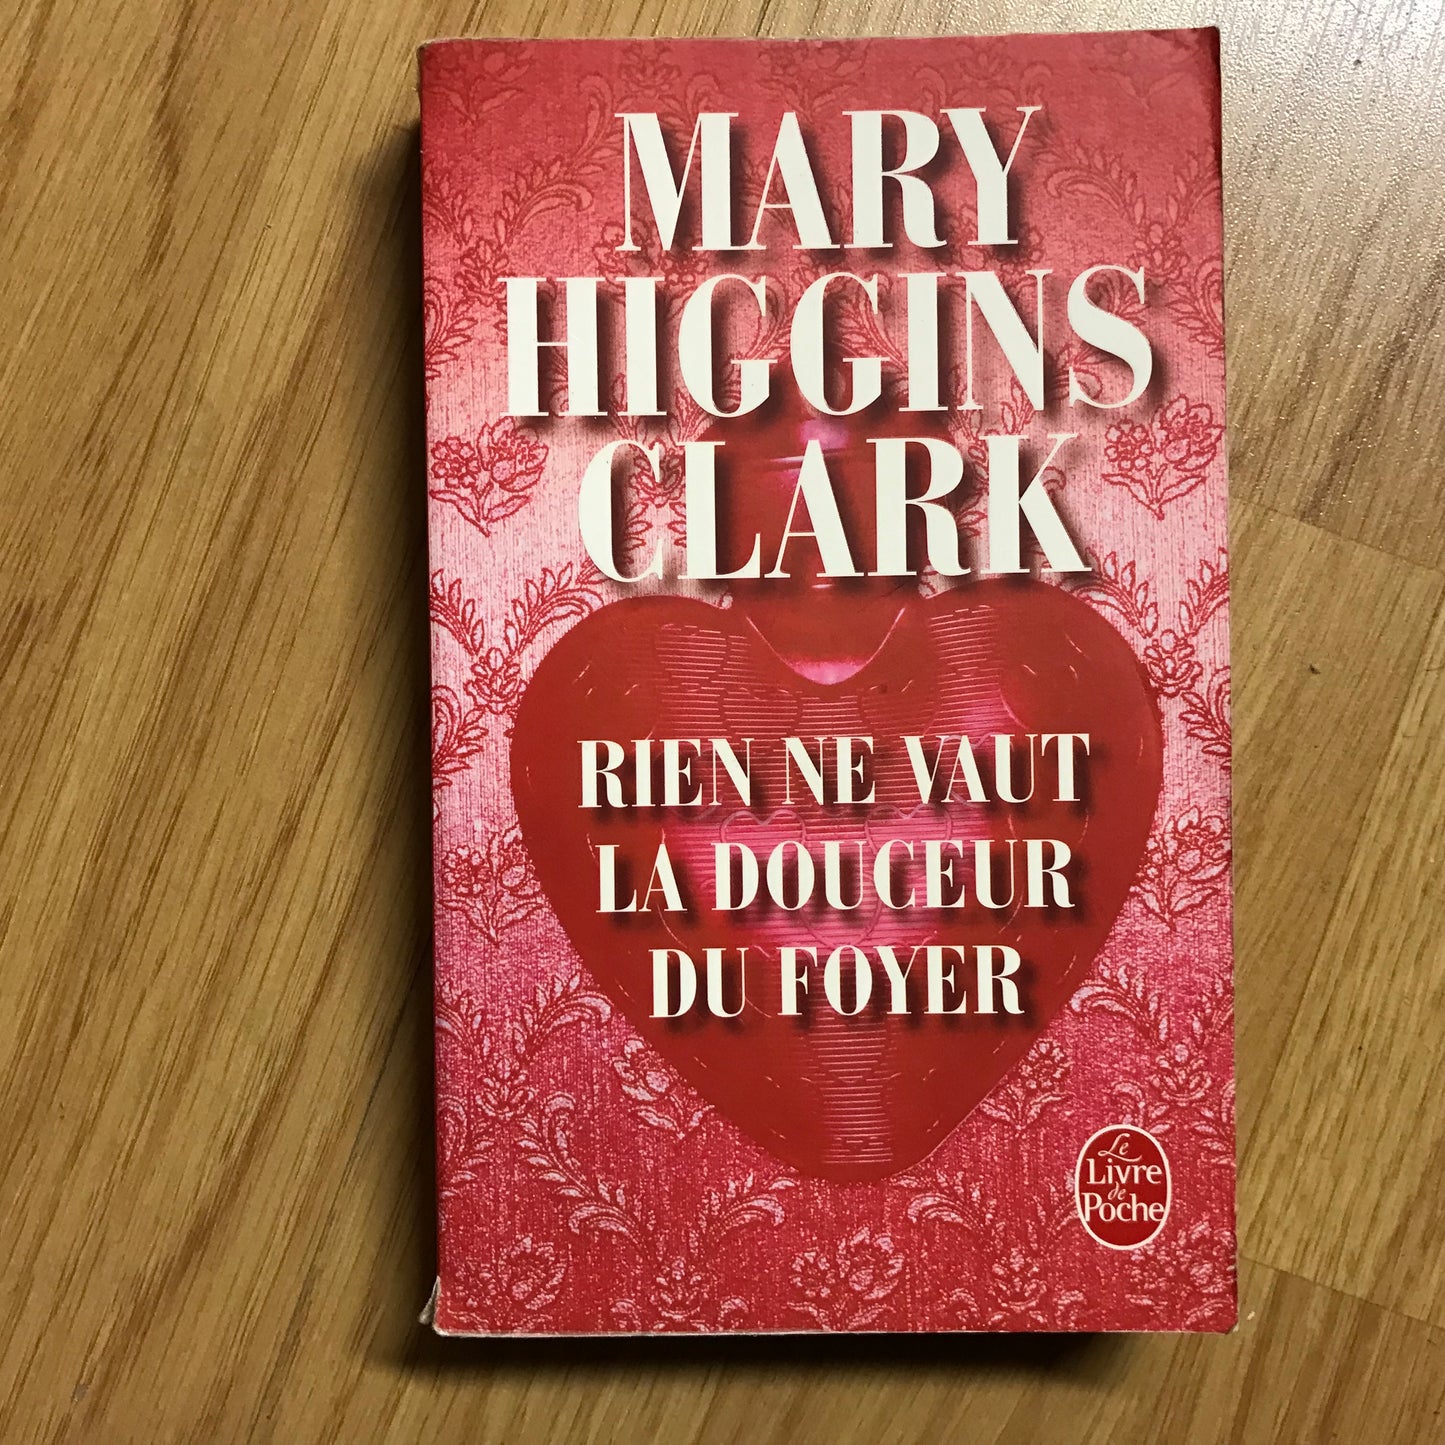 Higgins Clark, Mary - Rien ne vaut la douceur du foyer